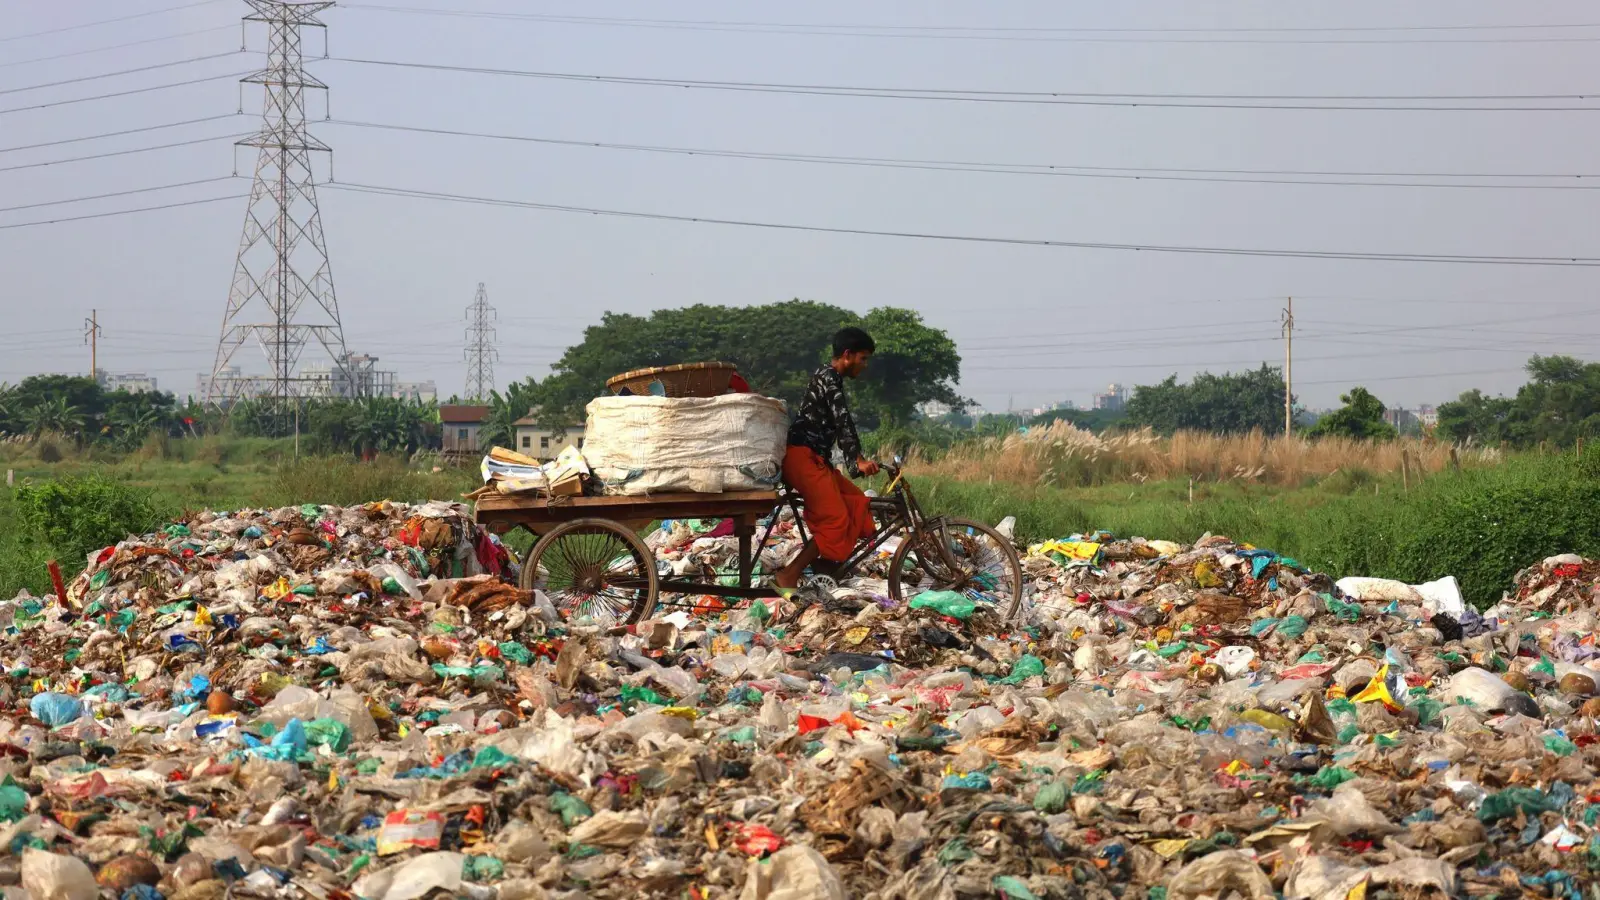 Einmal hergestellt, dauert es Jahrhunderte, bis sich Plastik wieder zersetzt. (Foto: Syed Mahabubul Kader/ZUMA Press Wire/dpa)